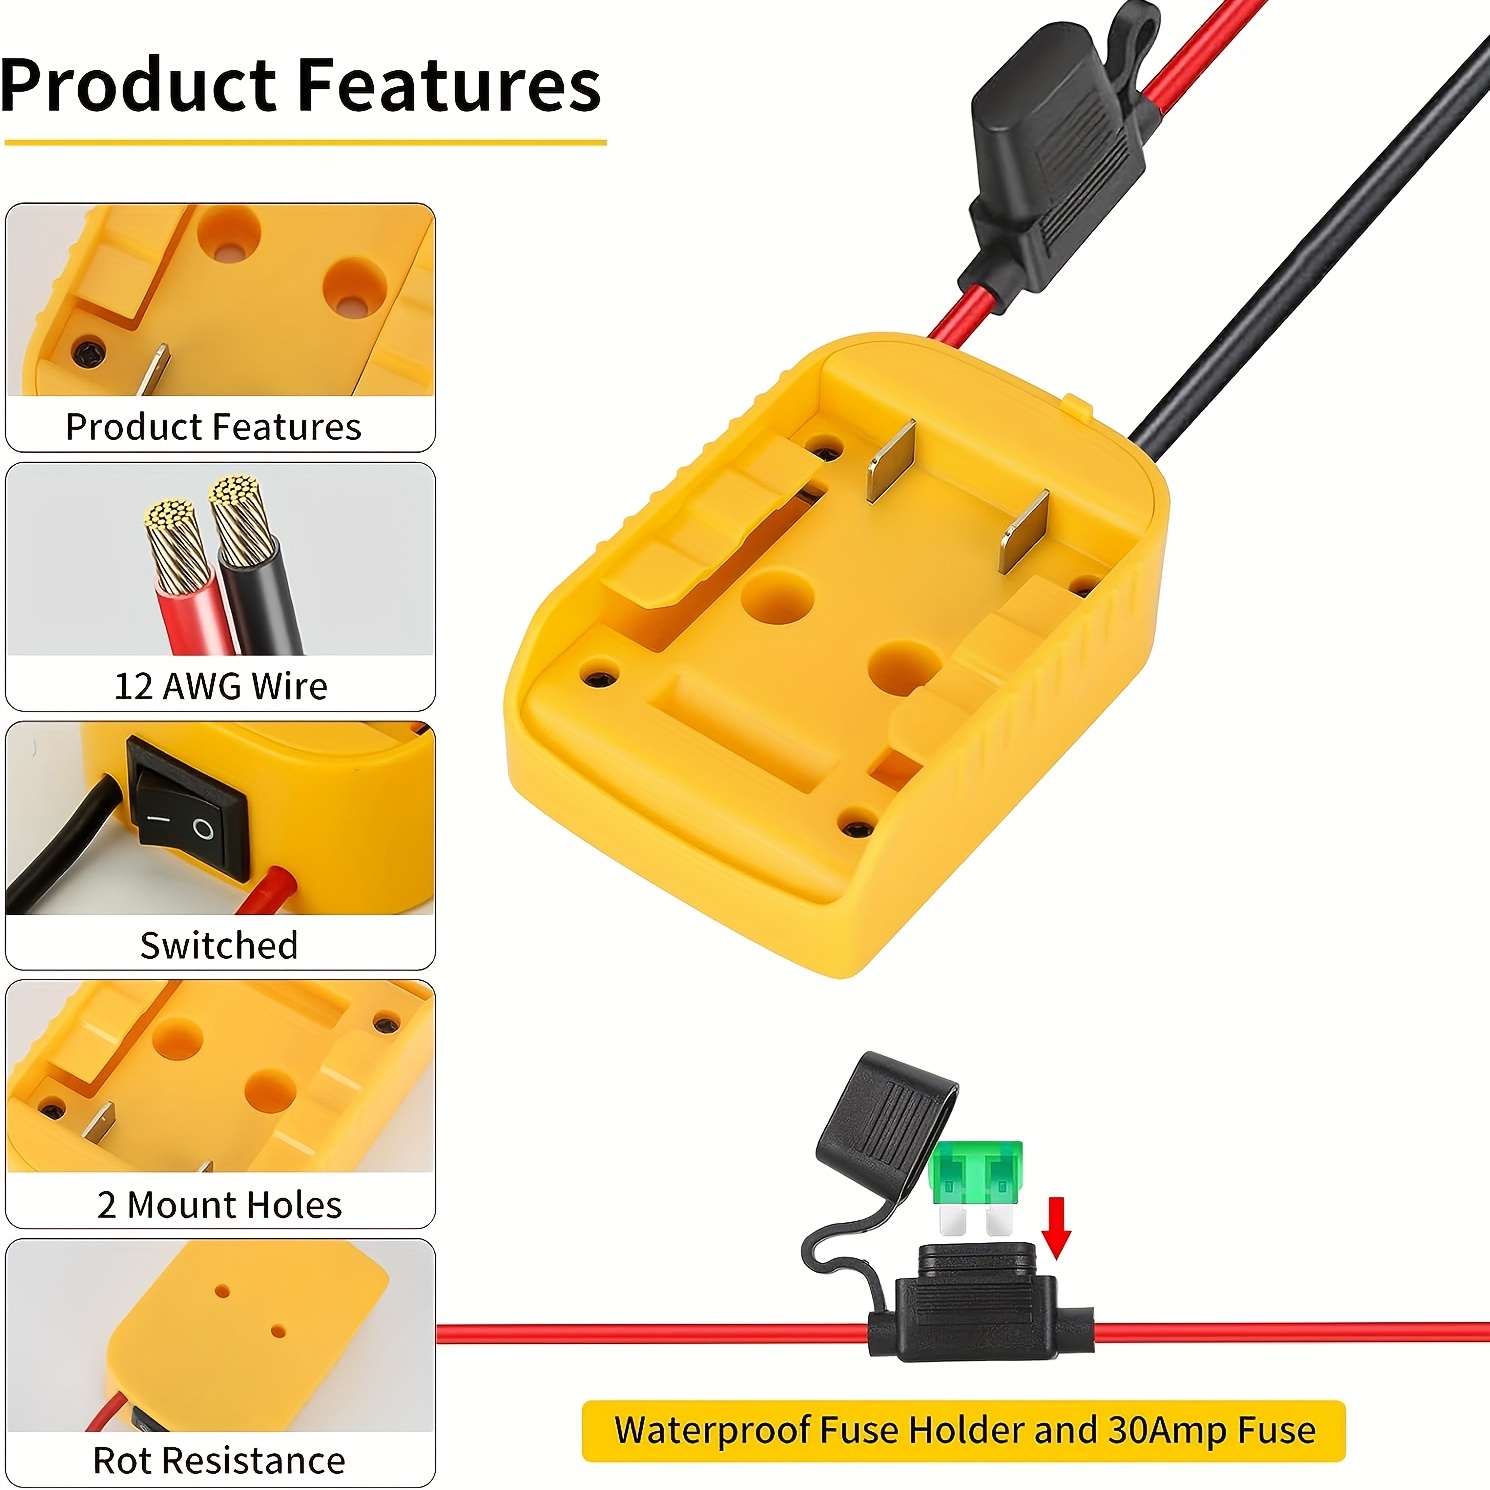 For Black & Decker 20V Battery Adapter Dock Connector for Power Wheels /  Ebike 